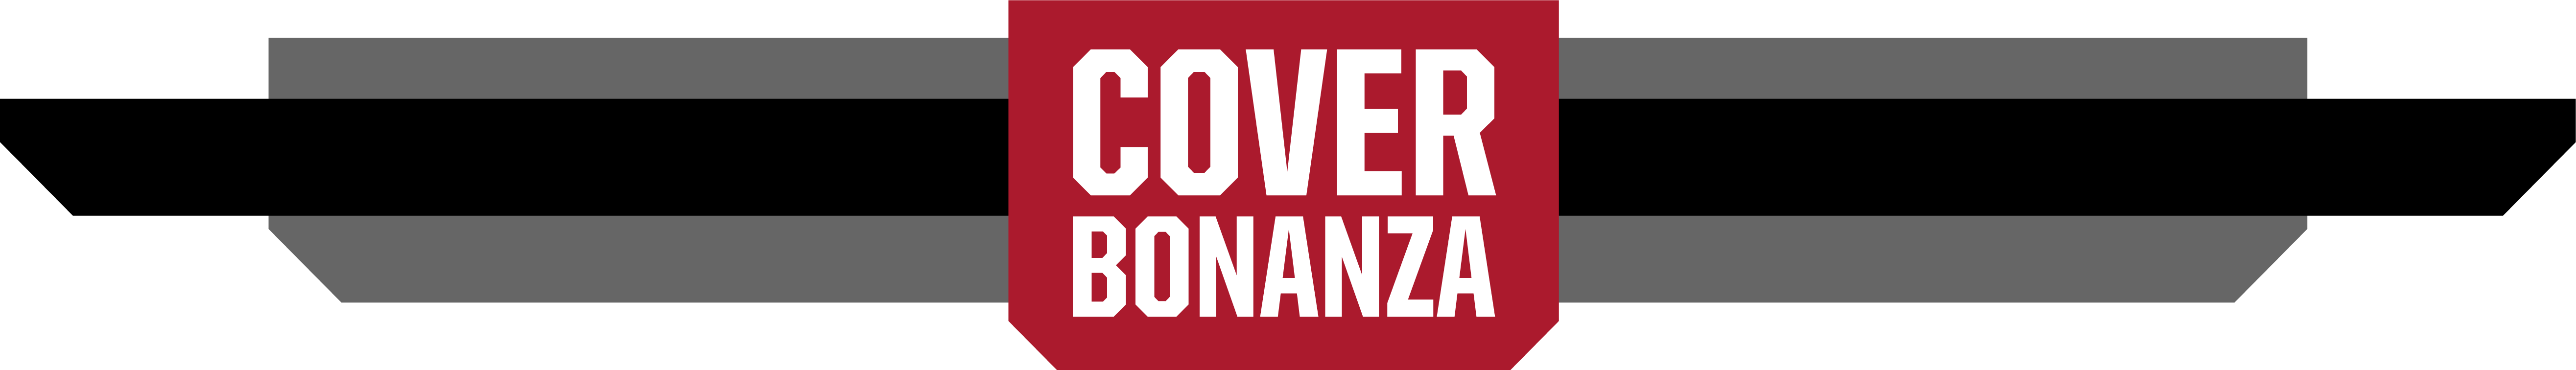 CoverBonanza